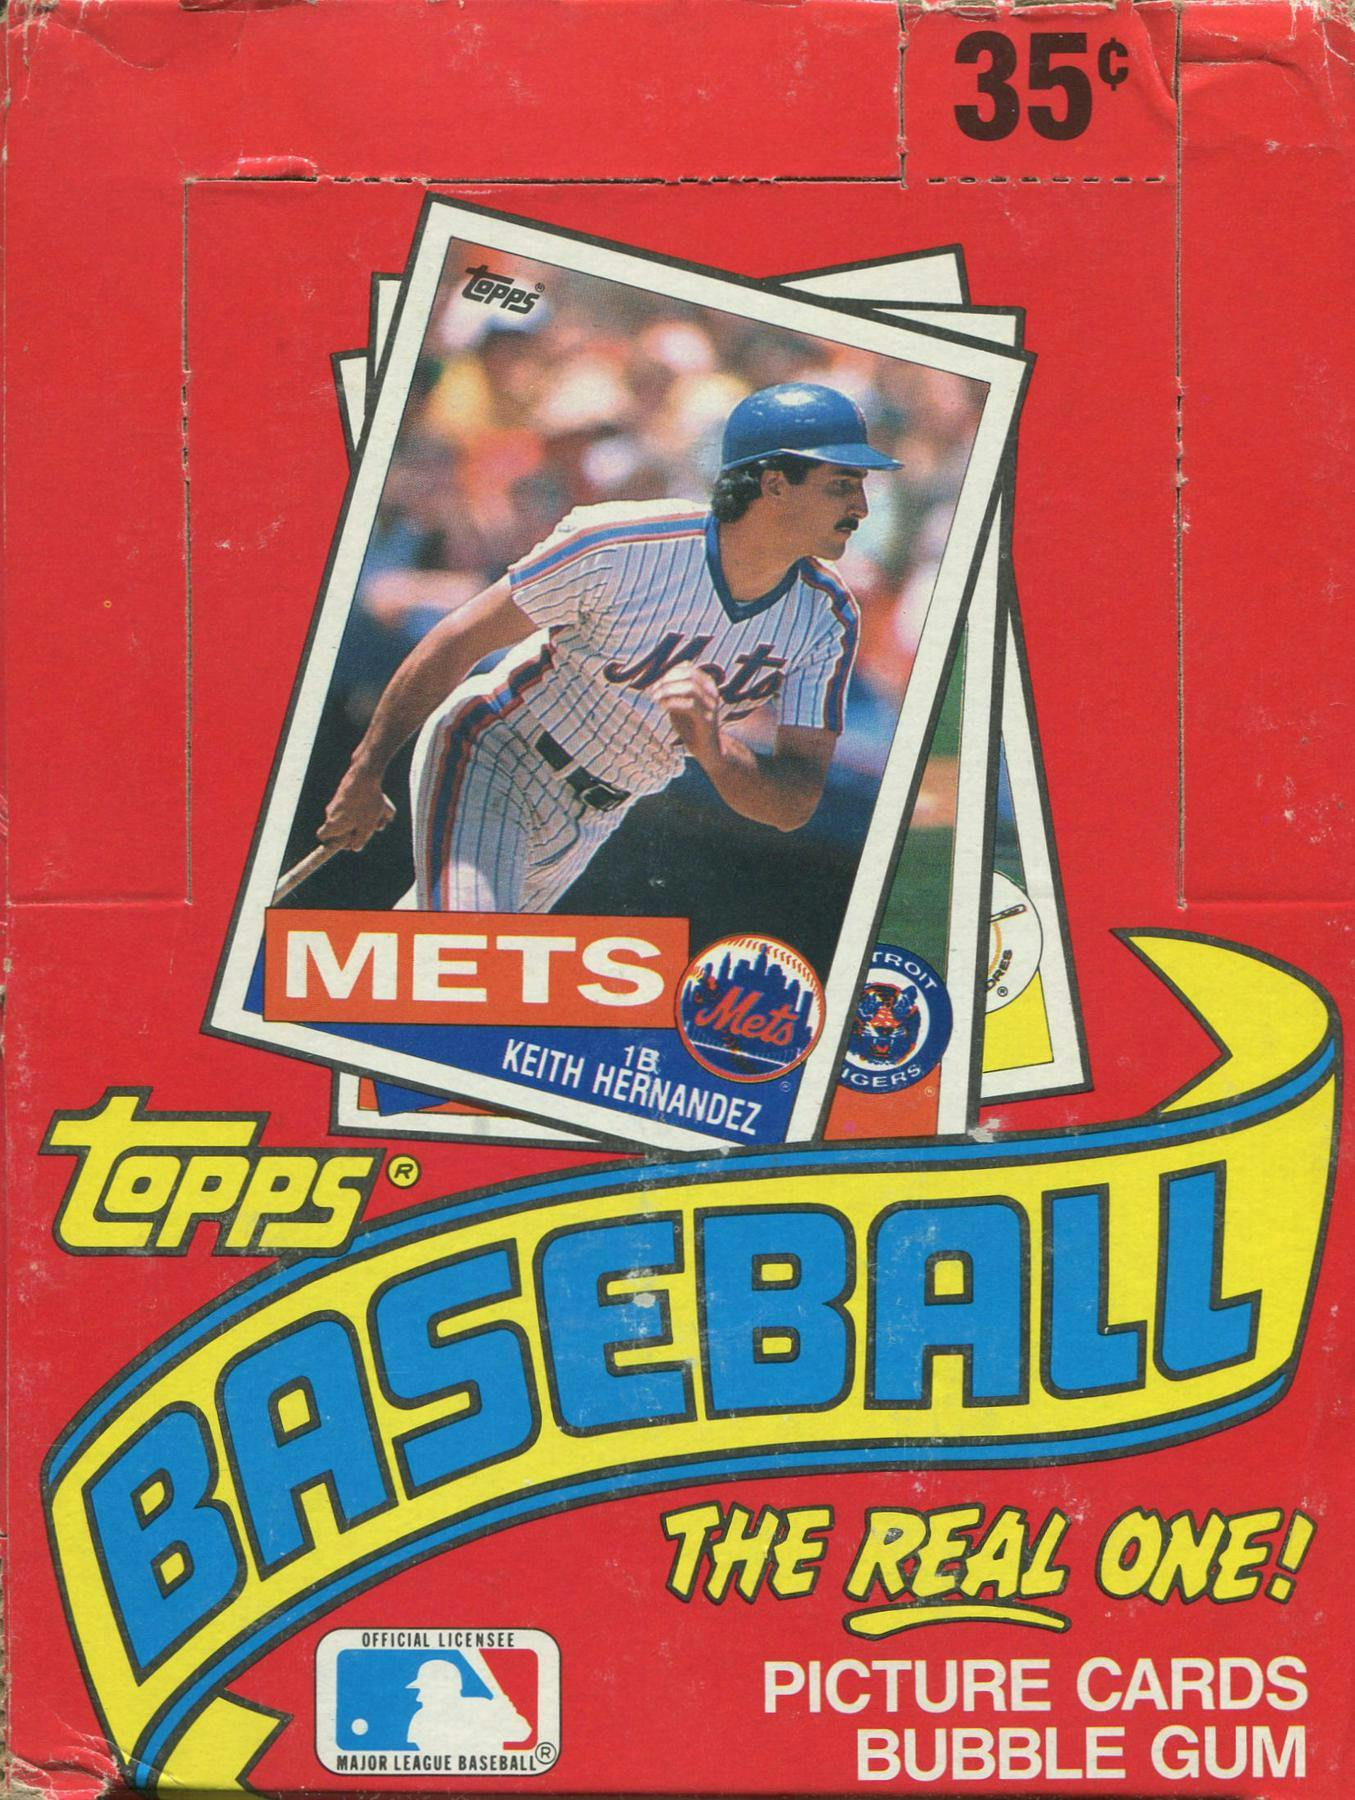 1985 topps baseball cards full set